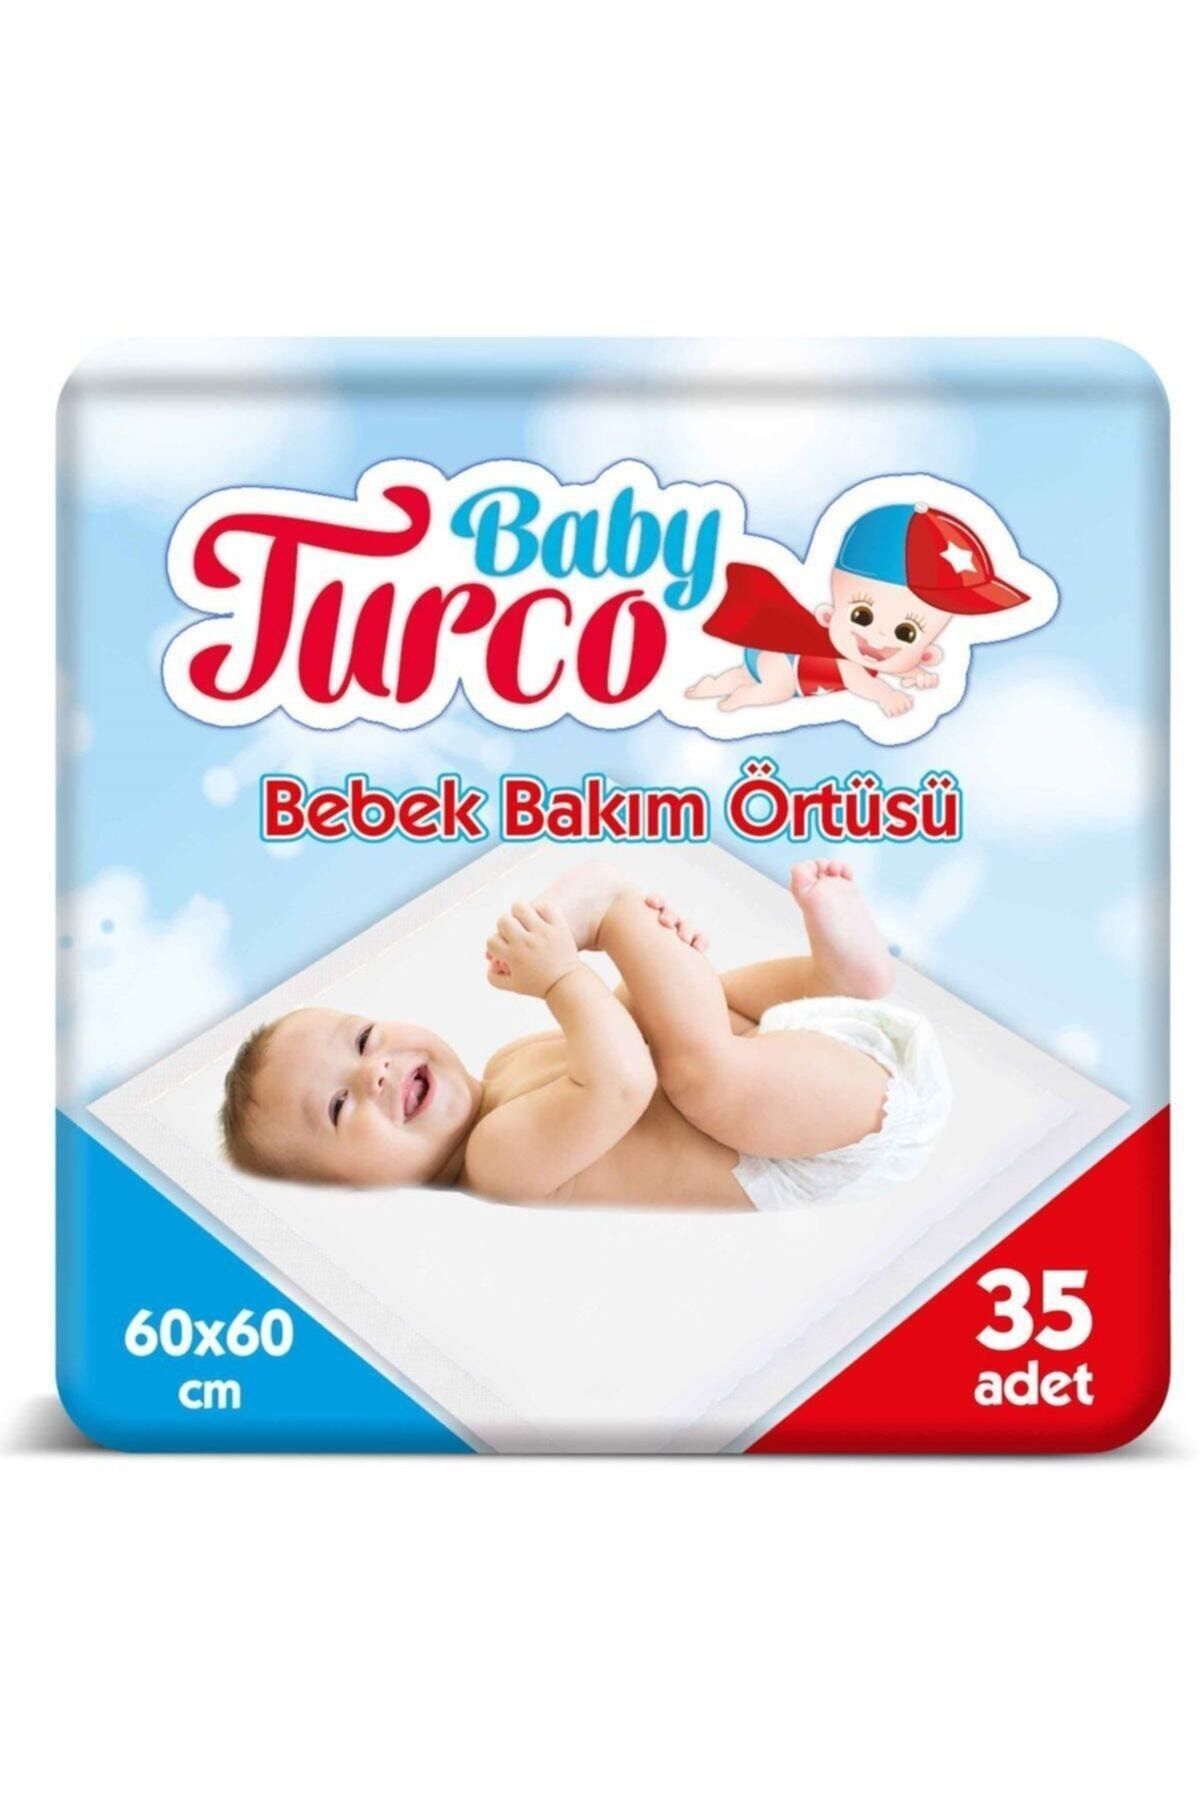 Baby Turco Bebek Bakım Örtüsü 60x60 Cm 35 Adet Bebek Bakım Örtüsü 60x60 Cm 35 Adet